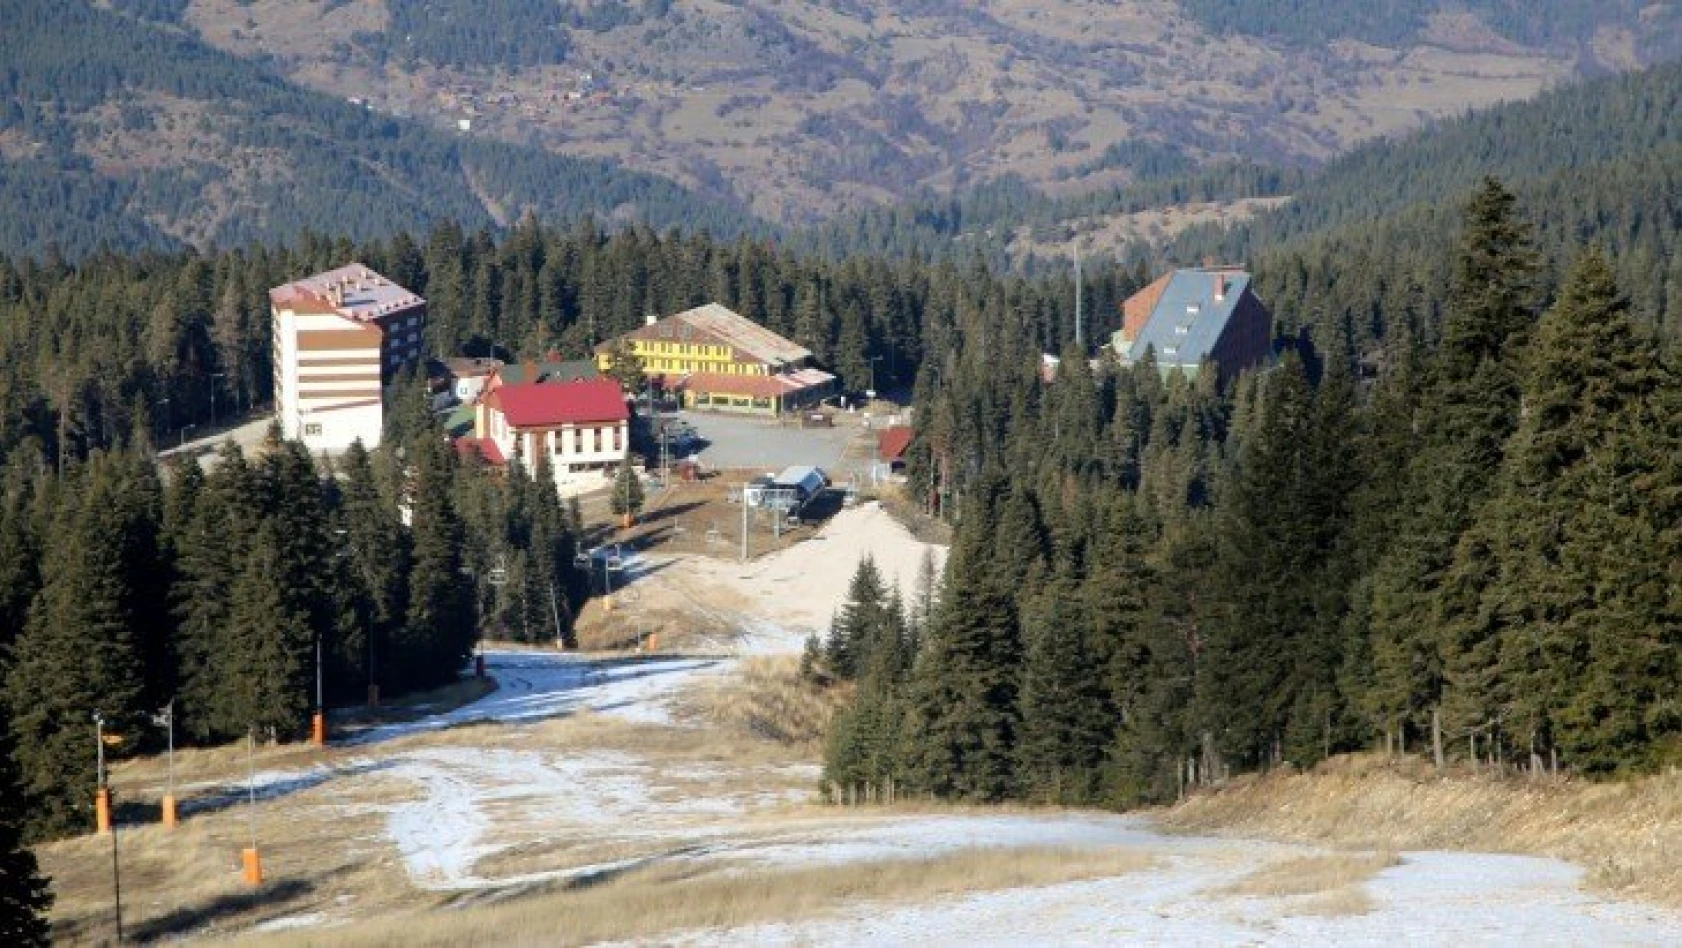 Ilgaz Dağı'ndaki kayak merkezi karsız ve sessiz kaldı